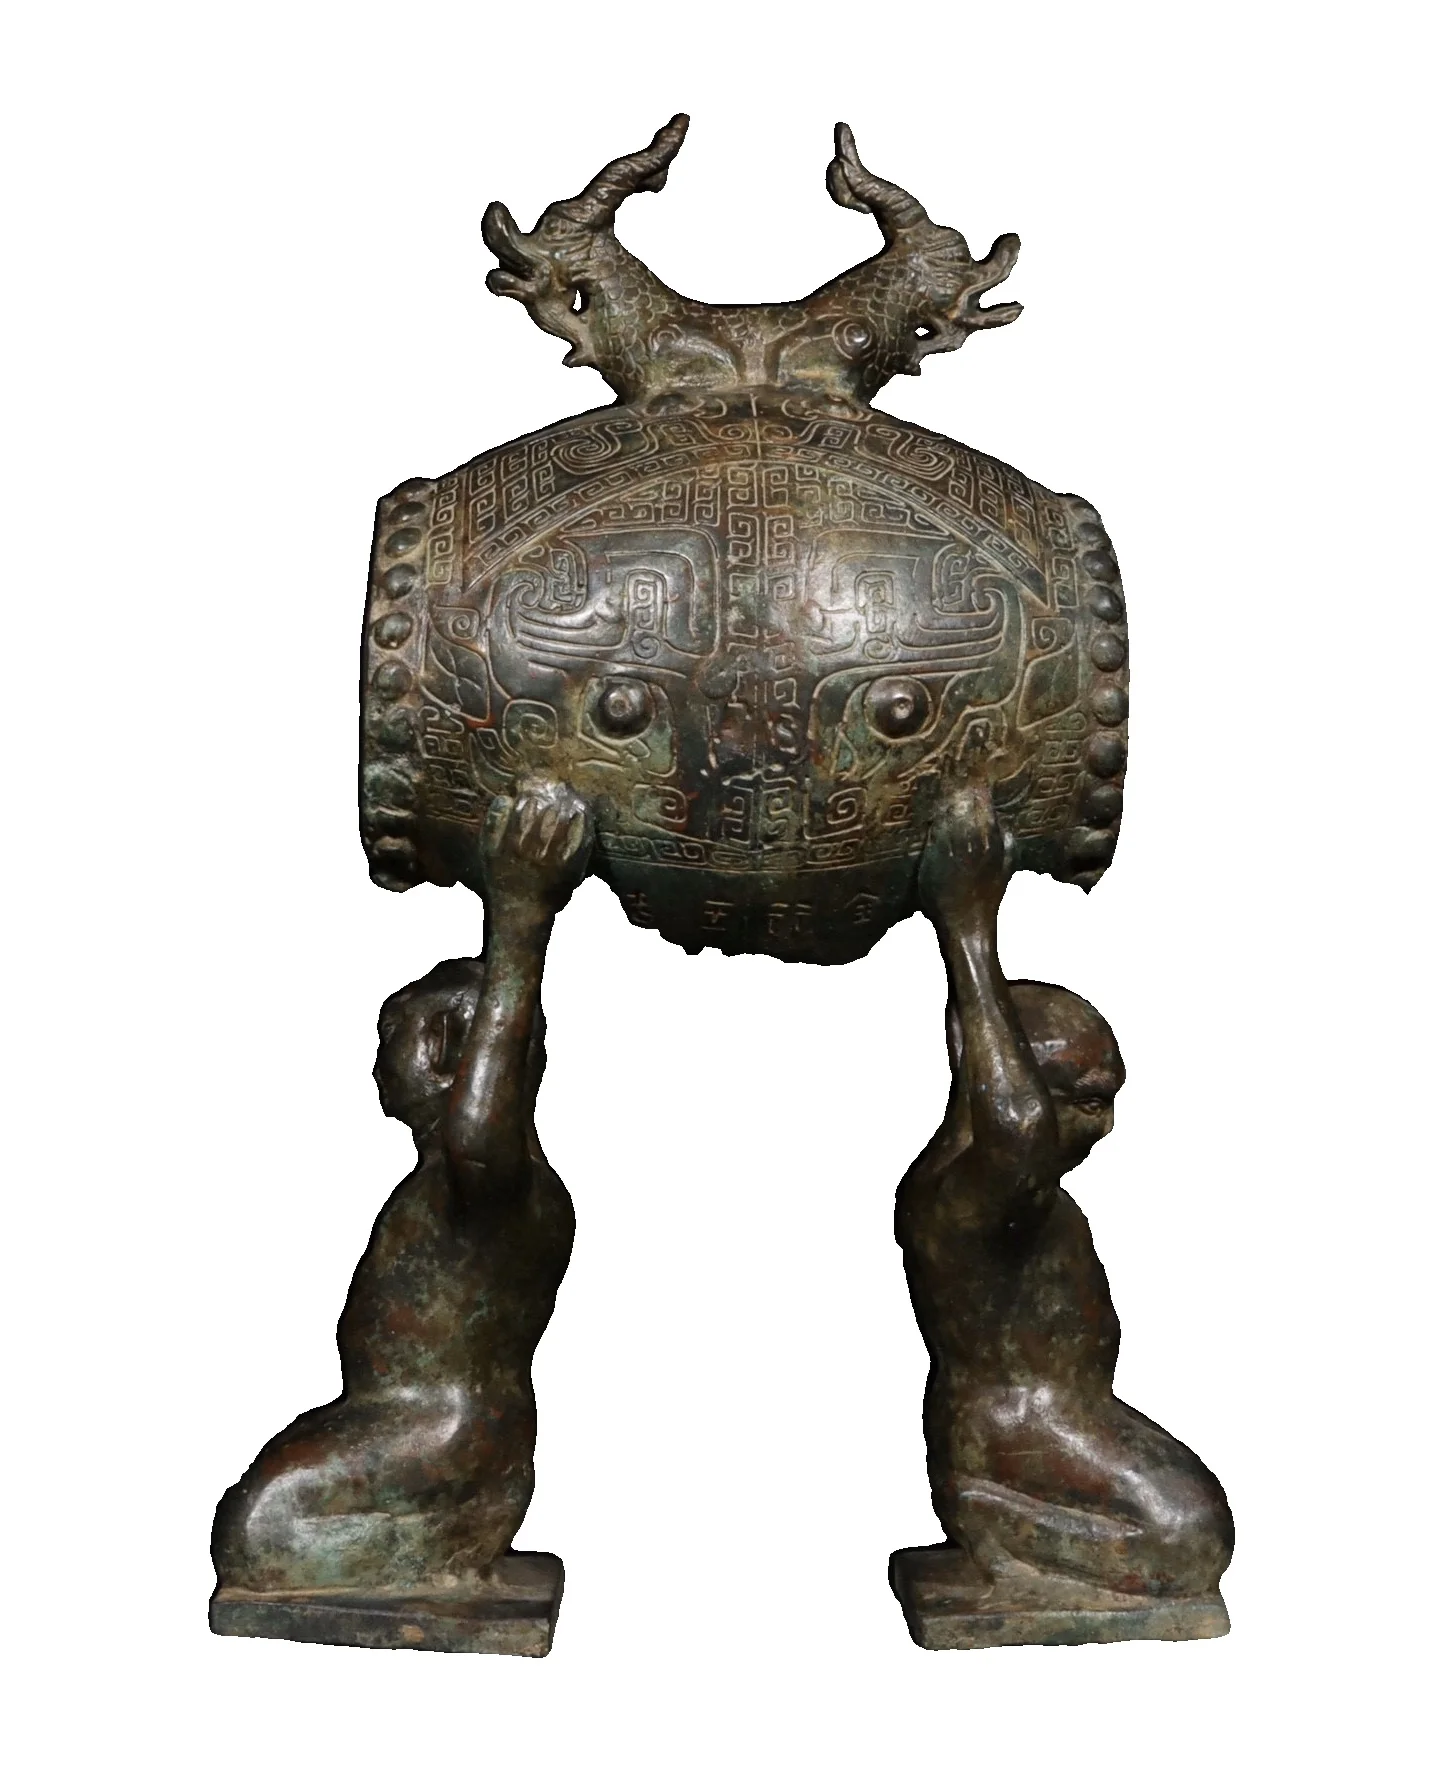 

Двойной дракон-барабан LaoJunLu Han бронзовая фигурка периода династии. Имитация античной бронзы, коллекция шедевров из Китая